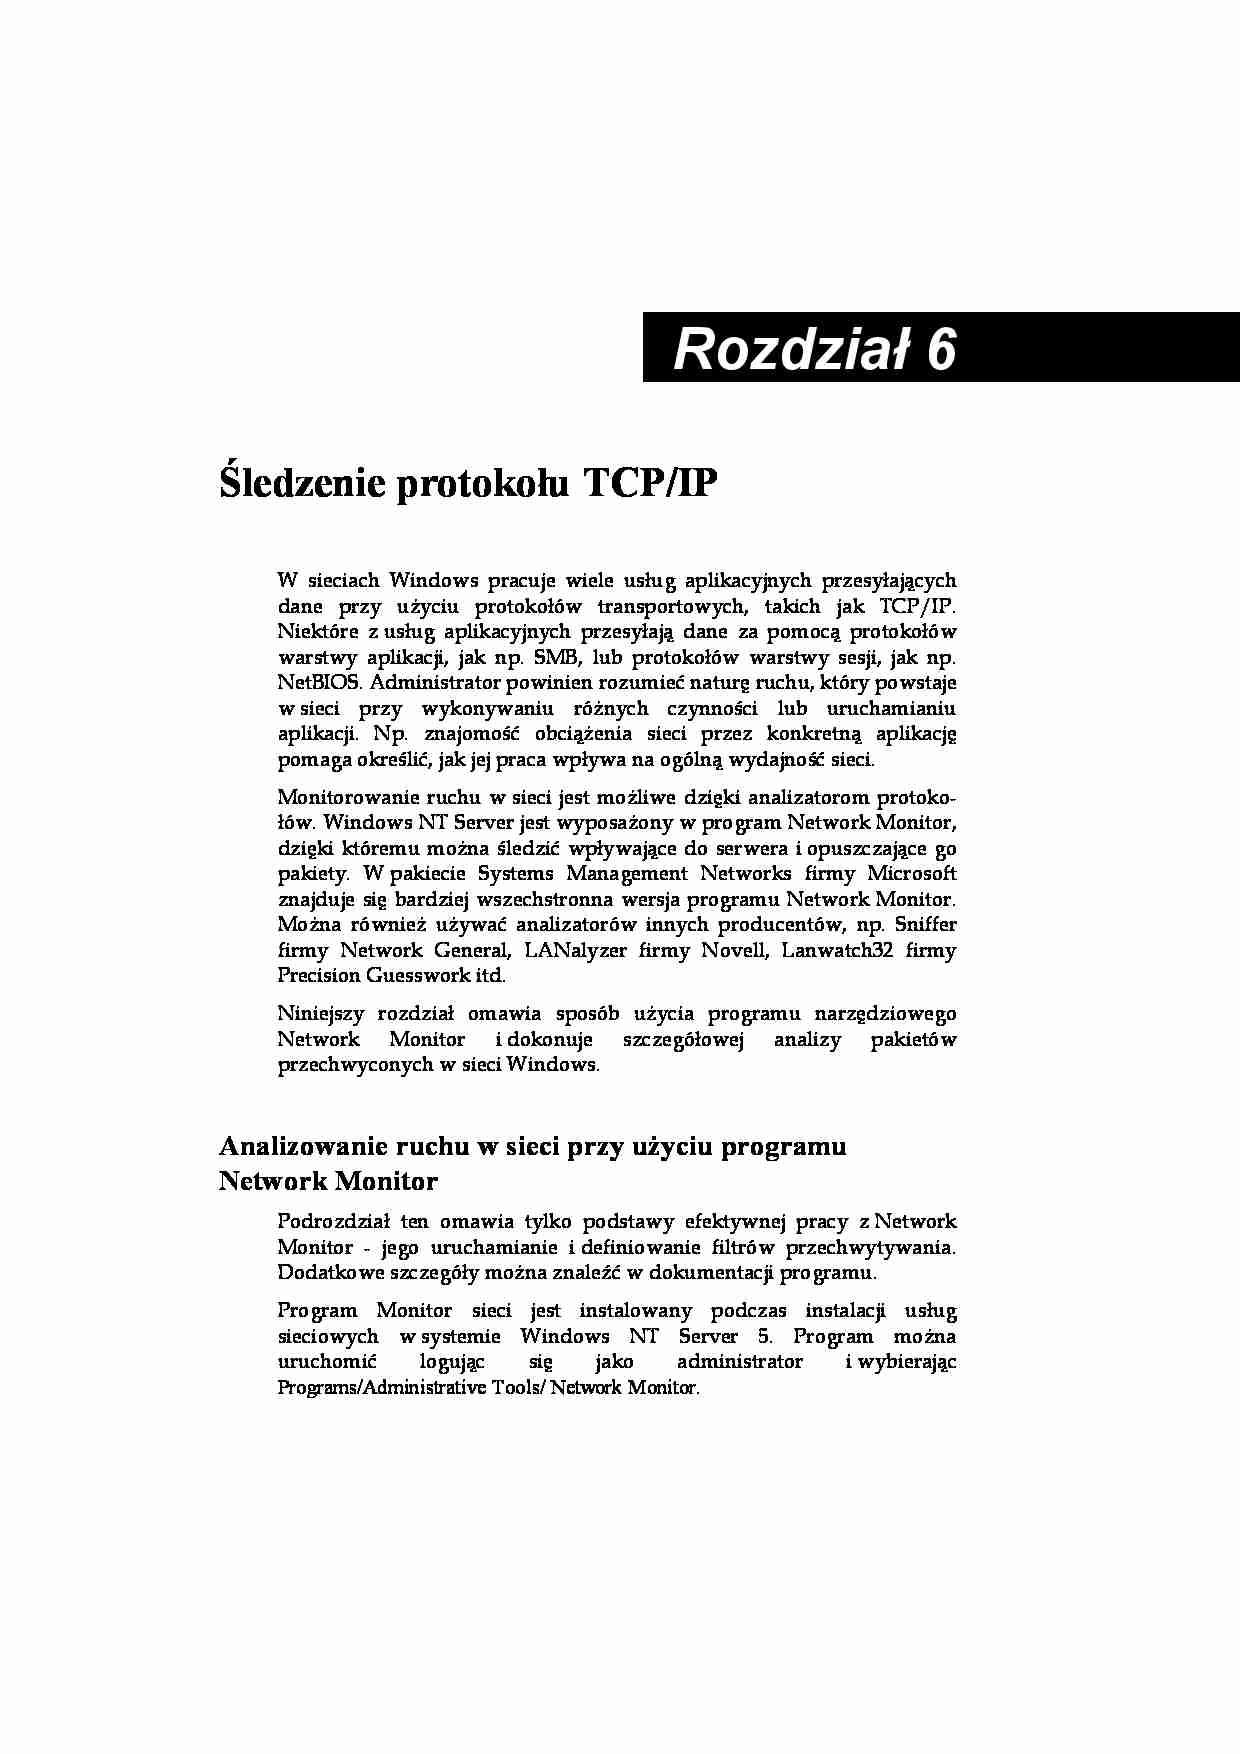 Architektura TCP IP w Windows 6 - strona 1